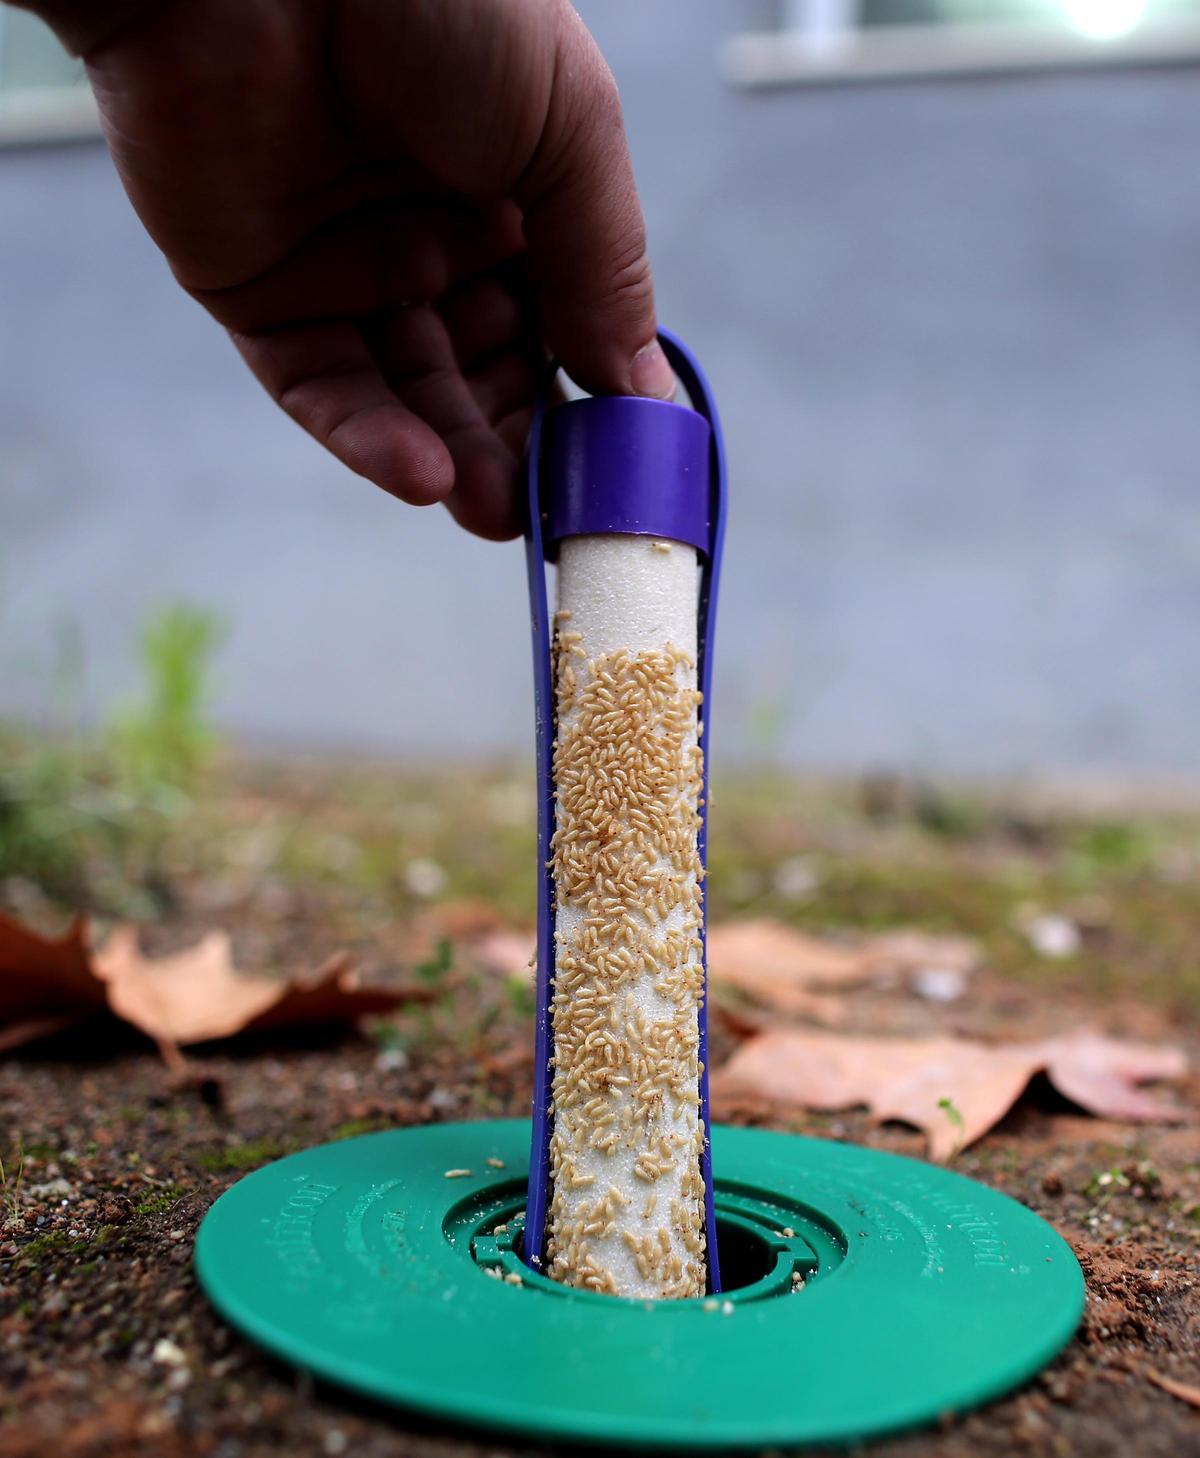 Cebos utilizados por Anticimex para combatir la plaga de termitas con eficacia.